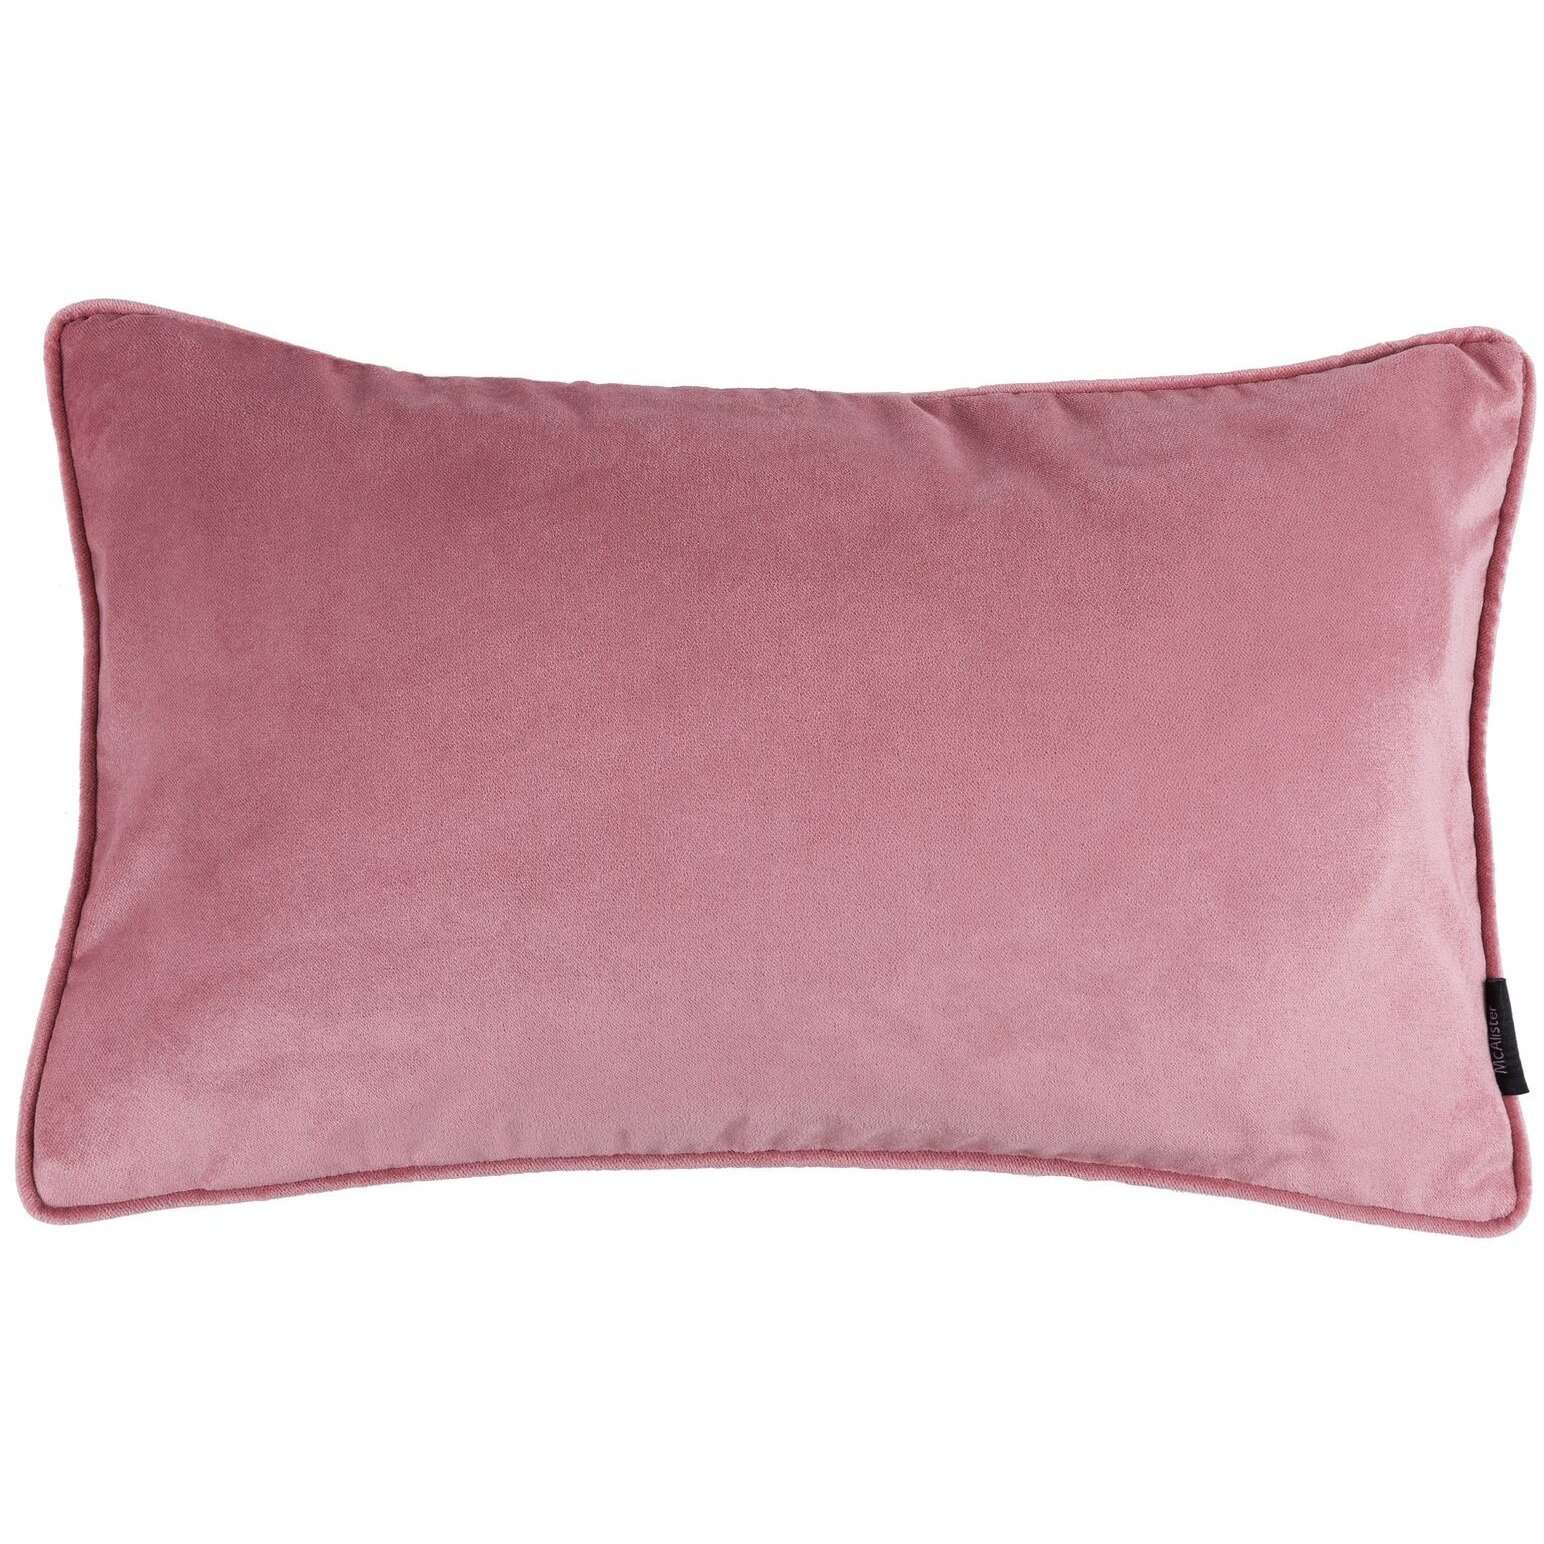 McAlister Textiles Matt Blush Pink Velvet Pillow Pillow Cover Only 50cm x 30cm 